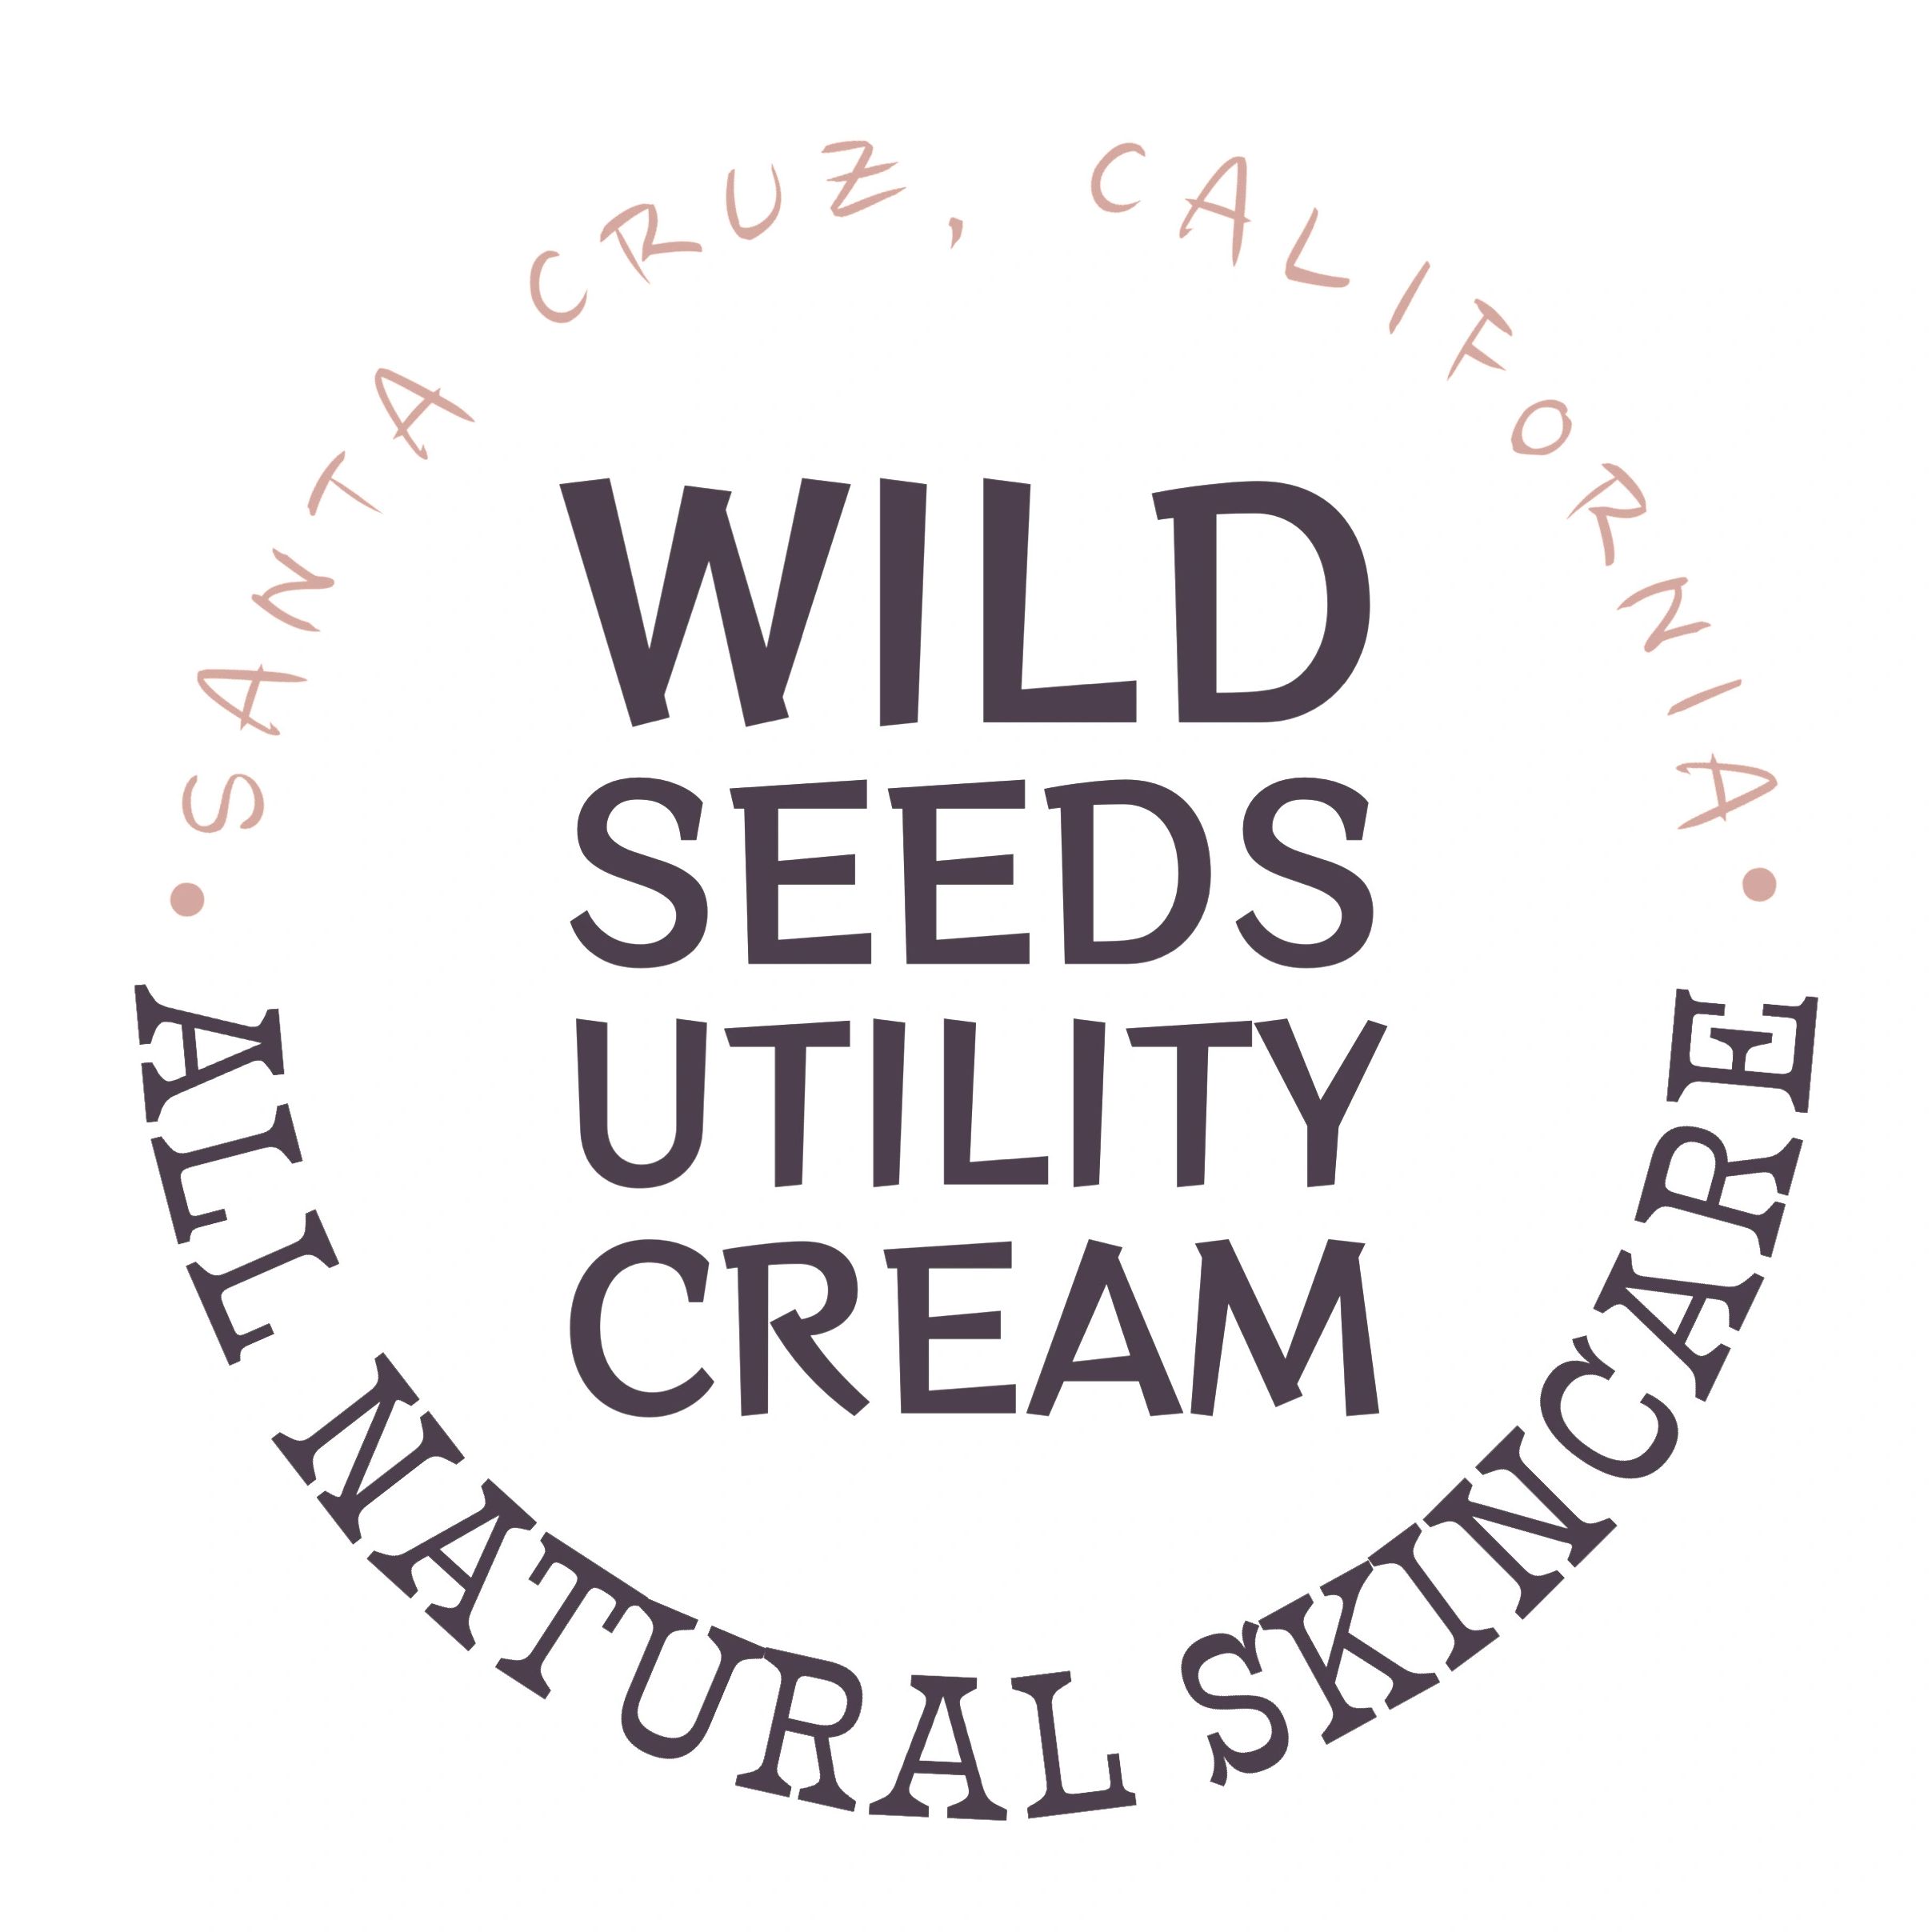 Wild seeds utility cream logo Santa Cruz California all natural skincare 